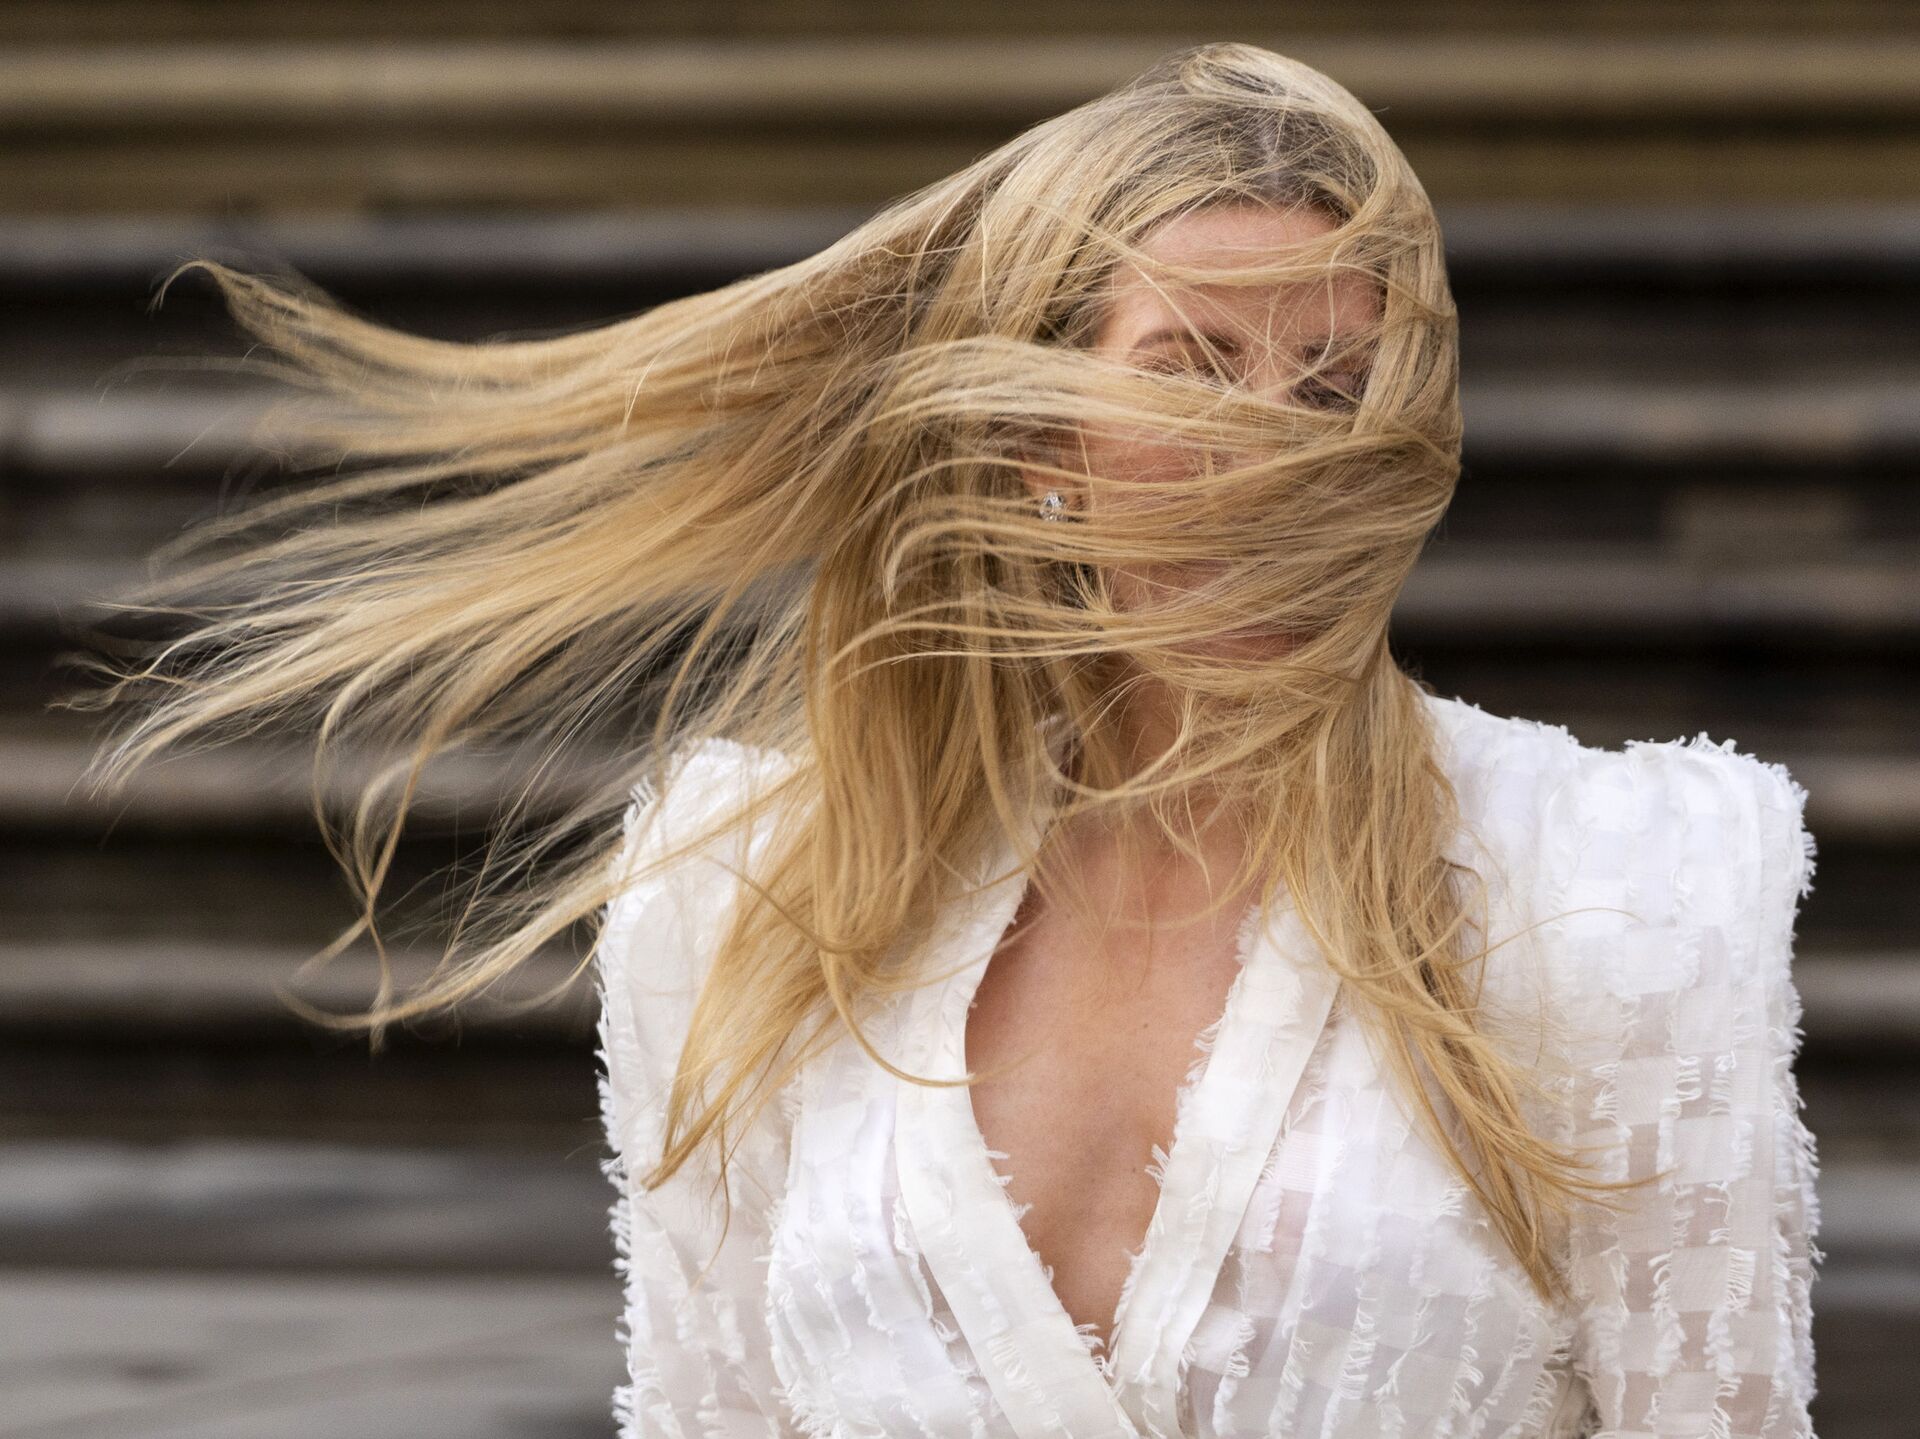 Видео светлый волос. Ellie Goulding 2022. Развивающиеся волосы. Длинные волосы на ветру. Волосы развеваются на ветру.